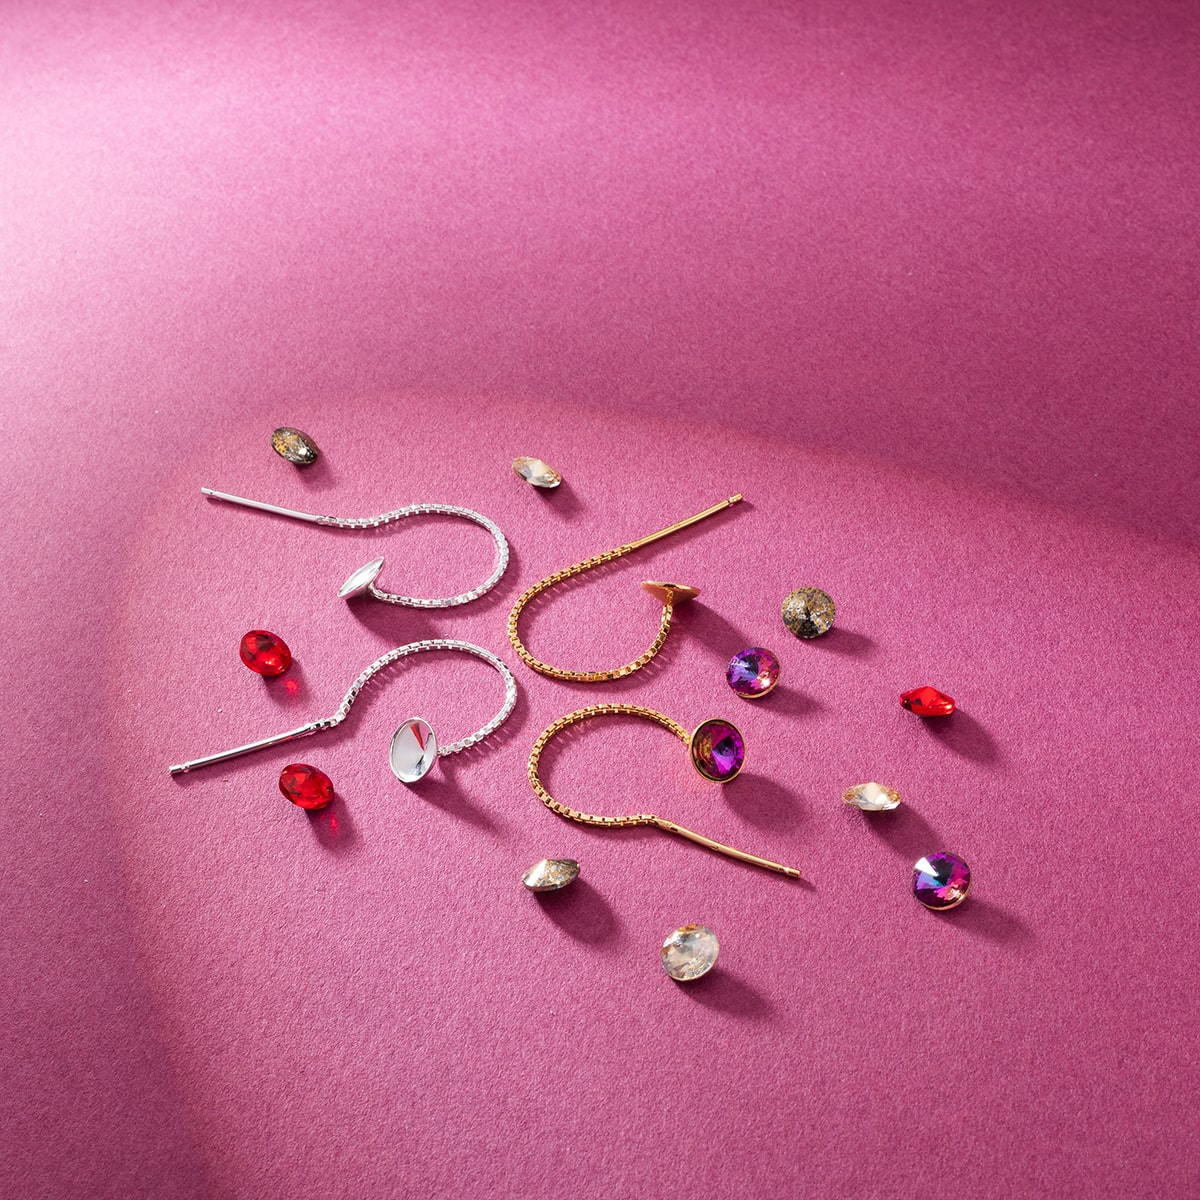 how to make earrings